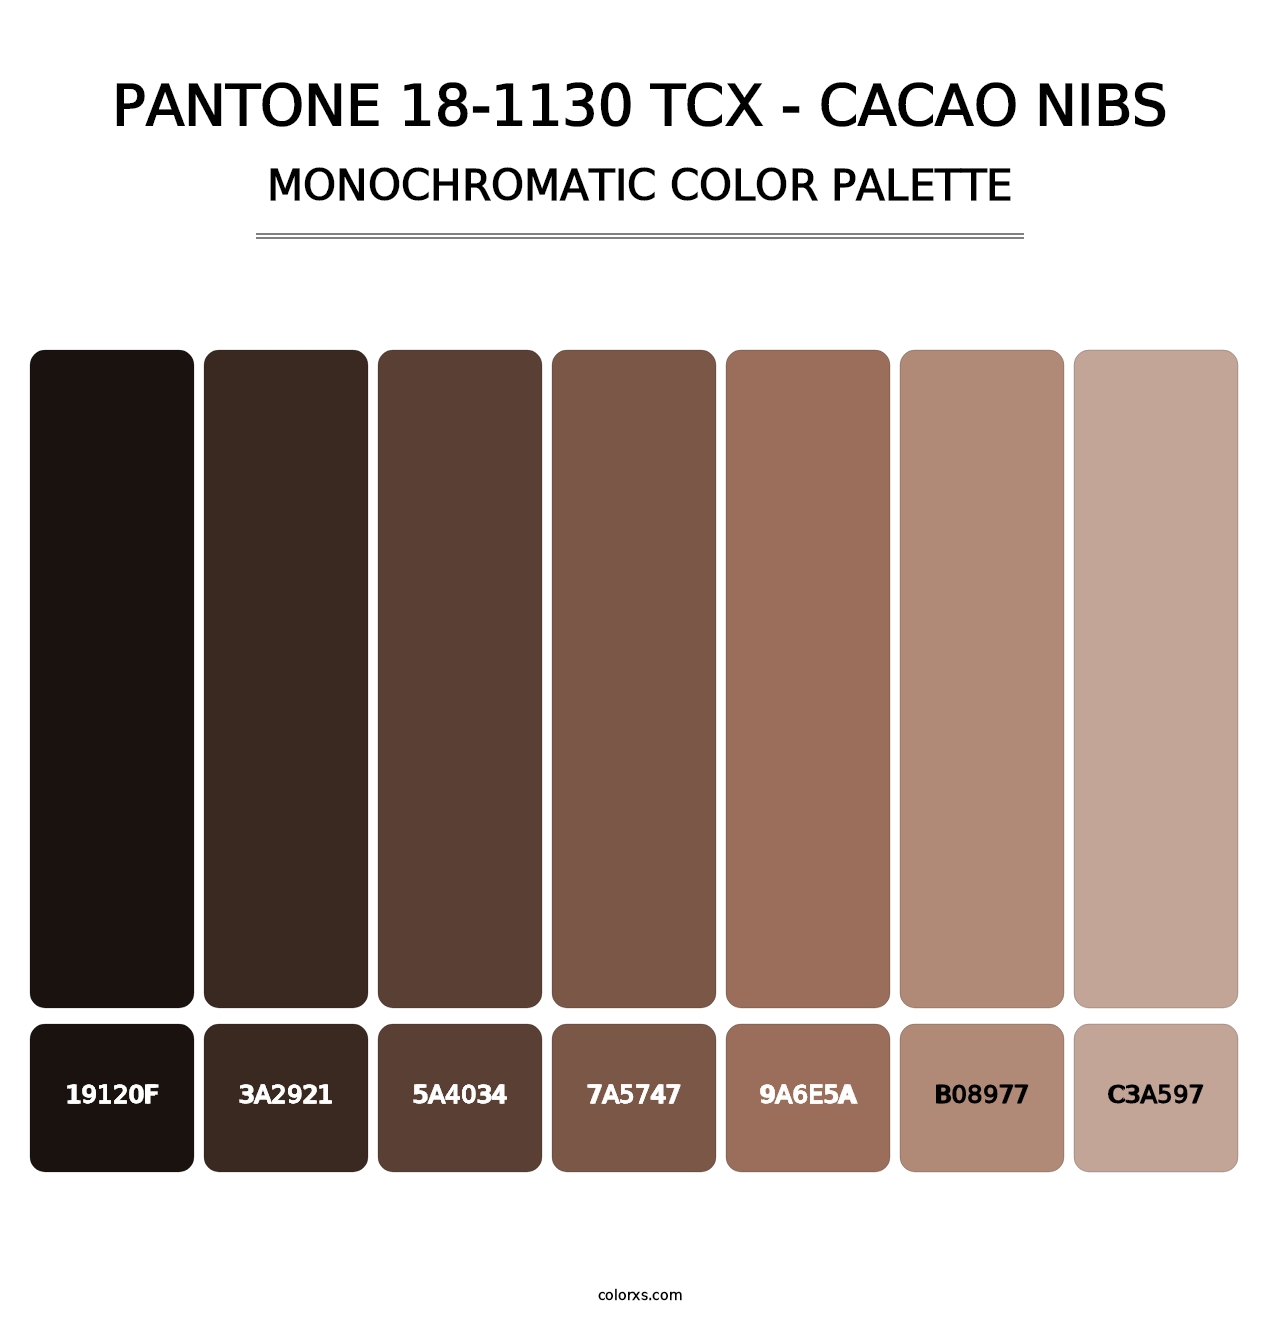 PANTONE 18-1130 TCX - Cacao Nibs - Monochromatic Color Palette